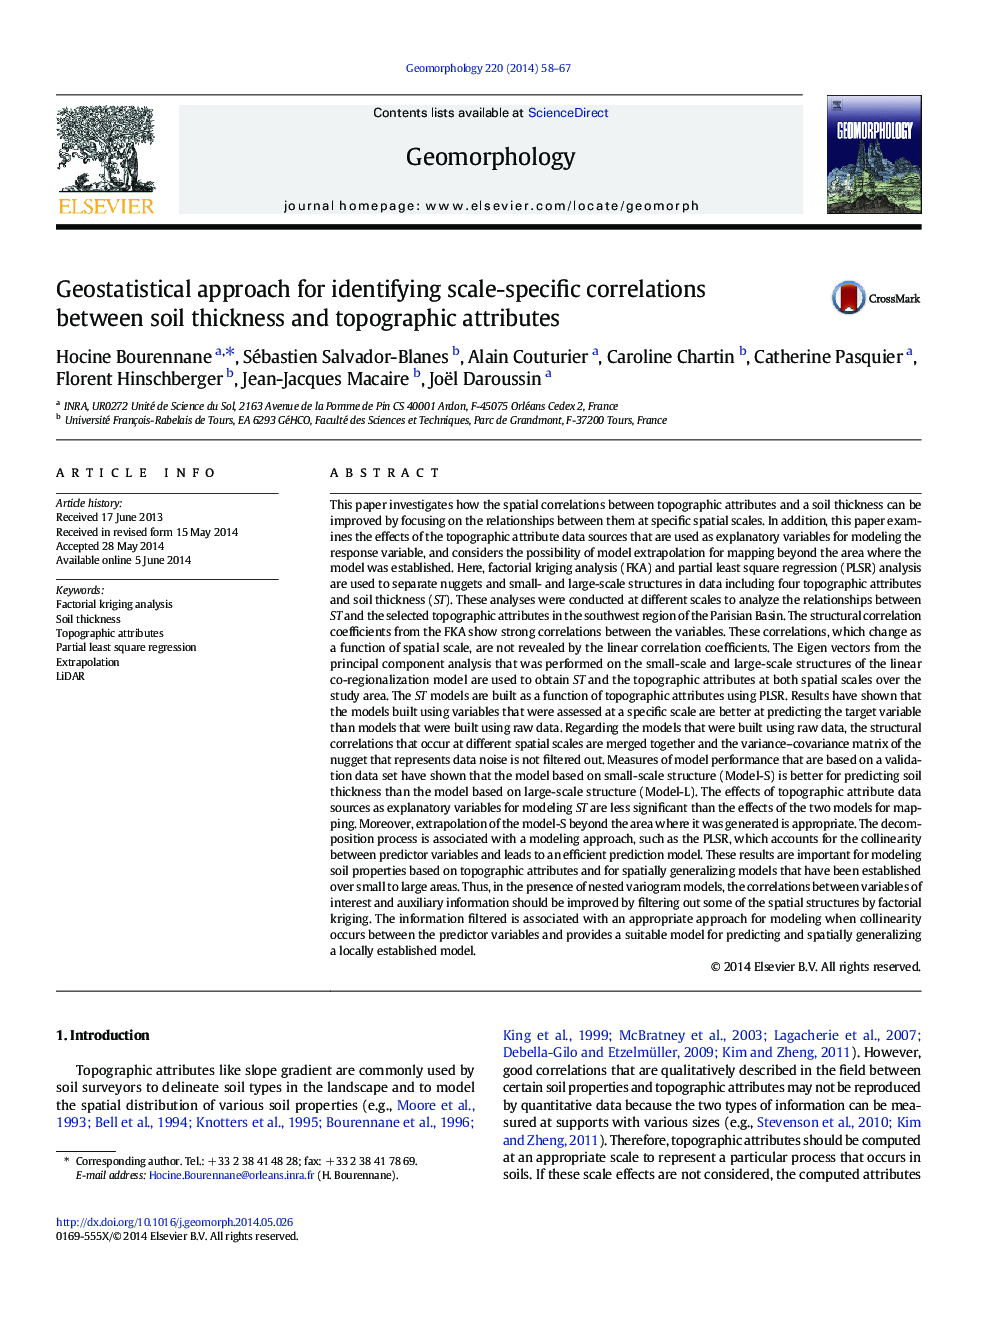 رویکرد ژئواستاتسیسکی برای شناسایی ارتباطات مقیاس خاص بین ضخامت خاک و ویژگی های توپوگرافی 